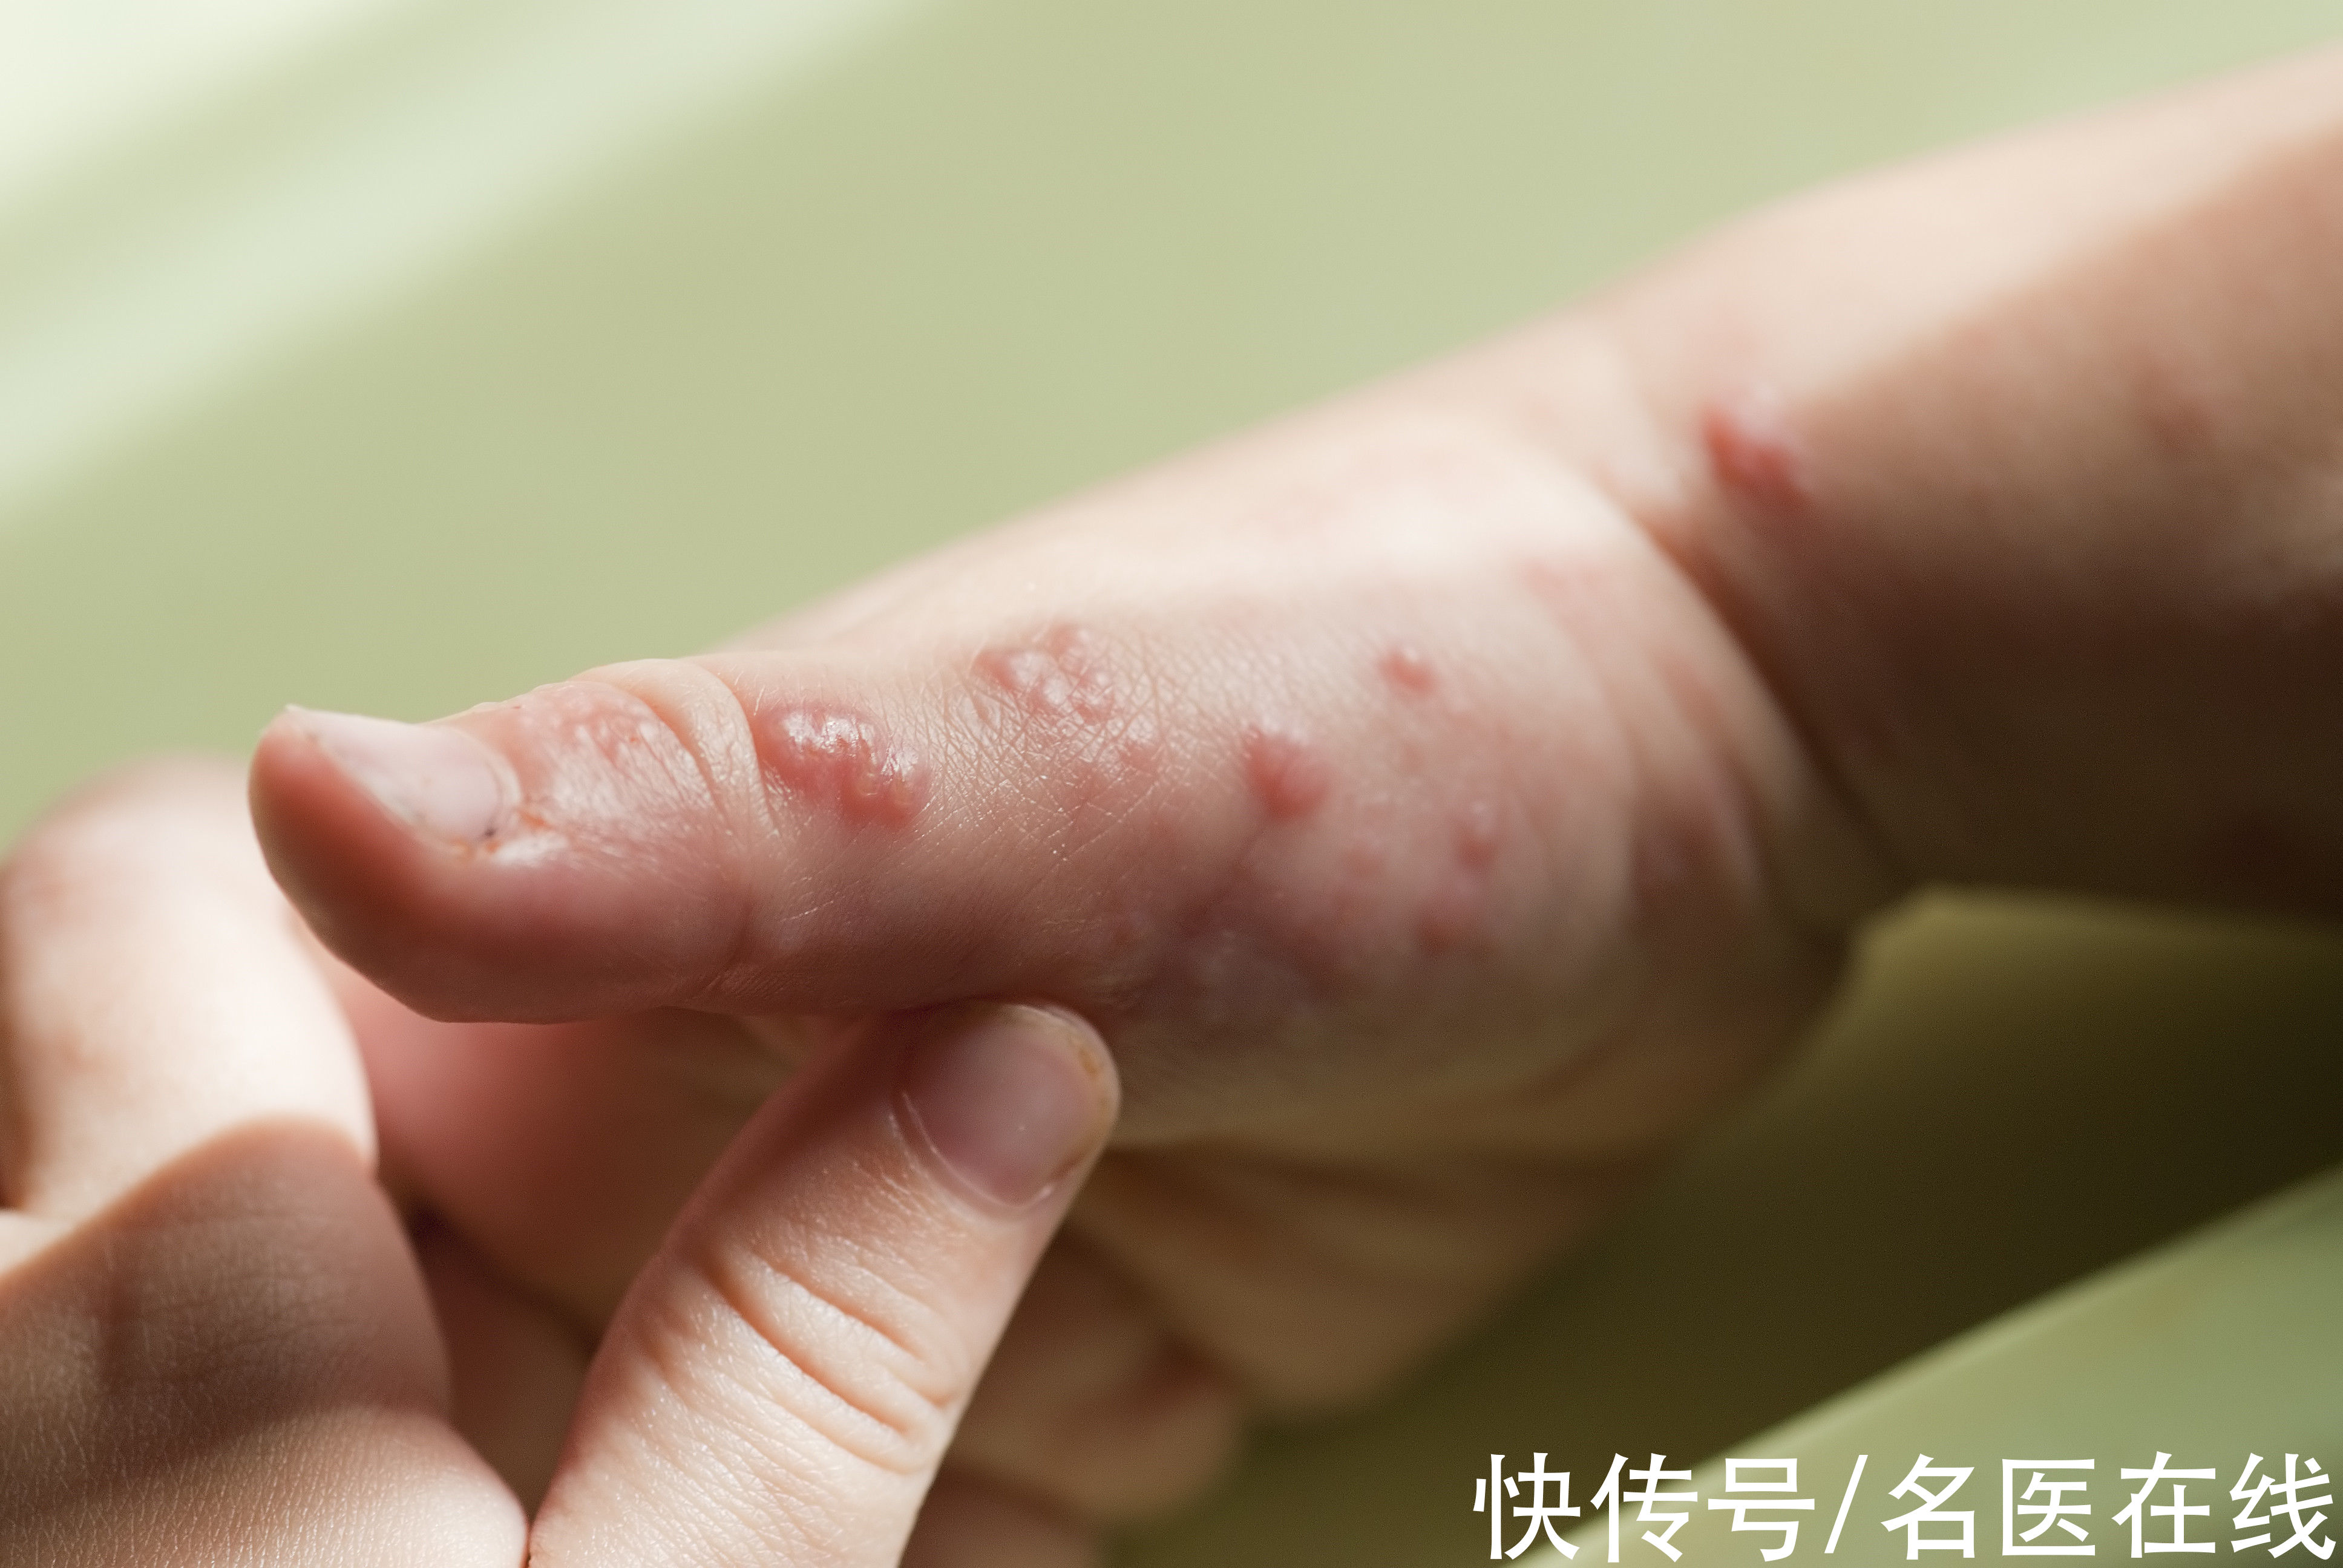 带状疱疹有时会被误认是皮炎